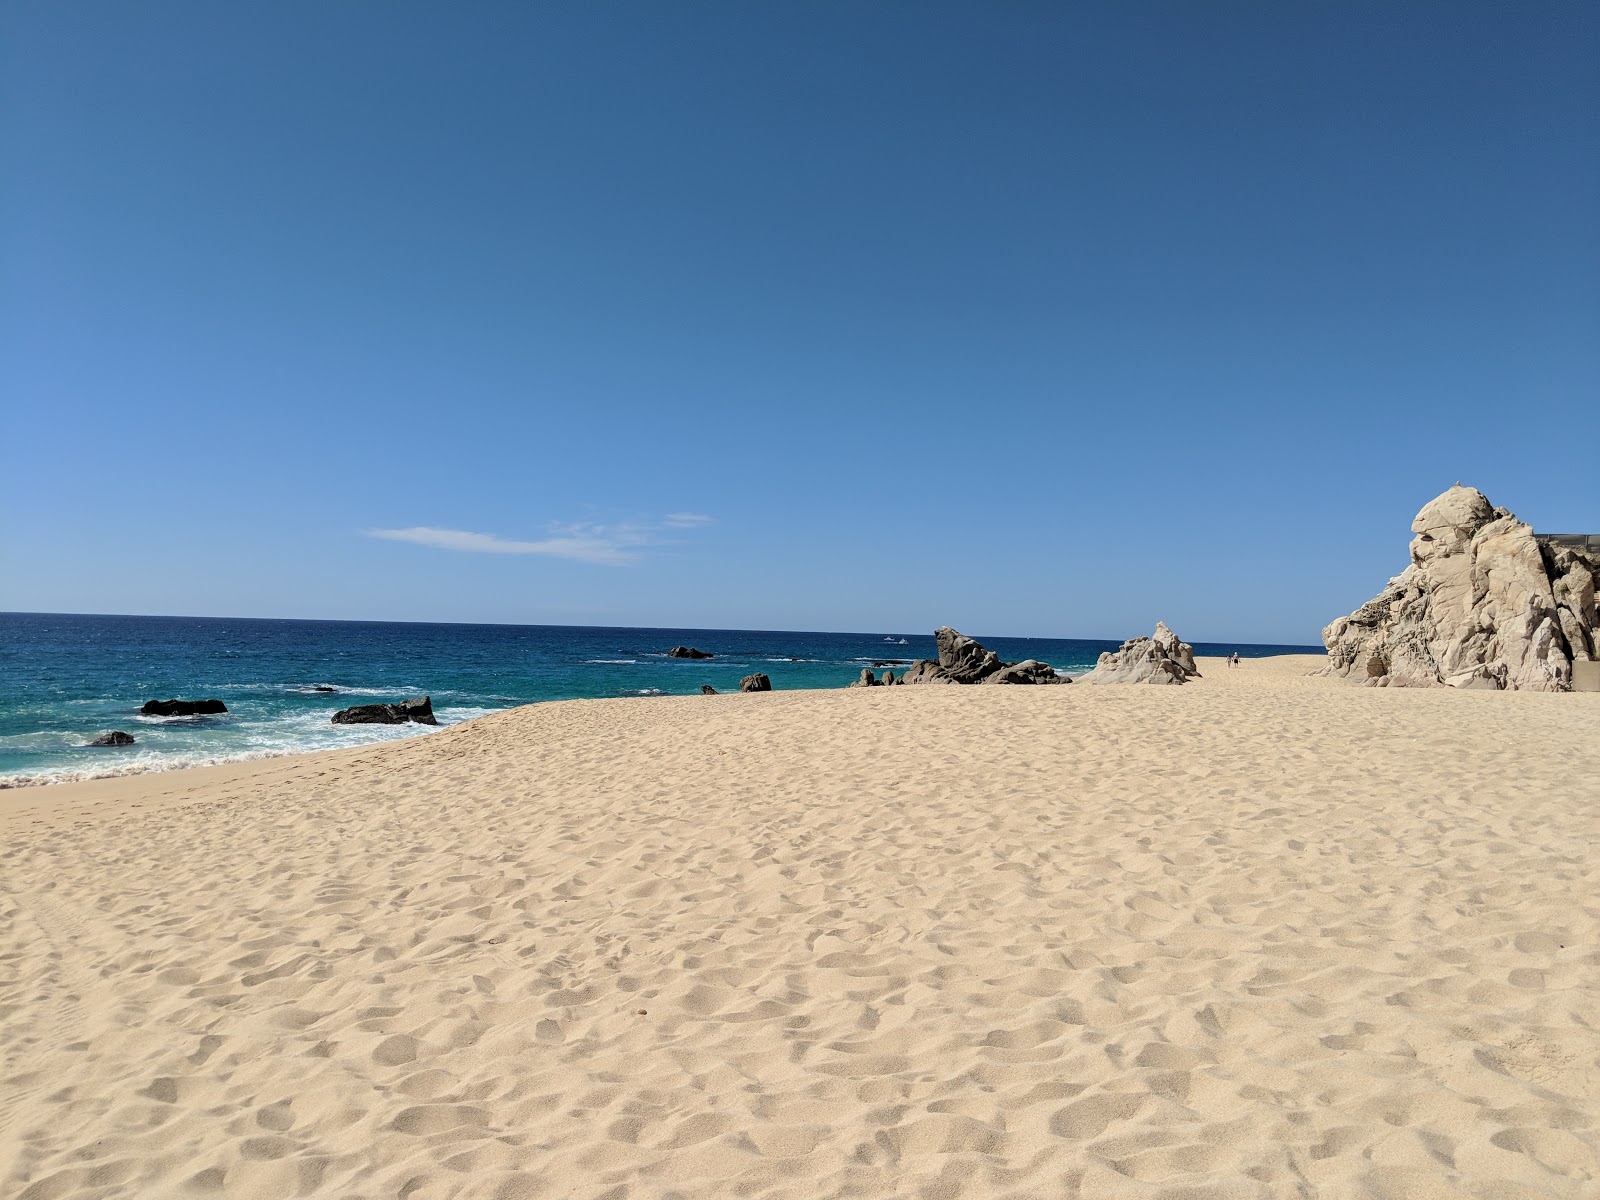 Zdjęcie Pedregal Playa - popularne miejsce wśród znawców relaksu